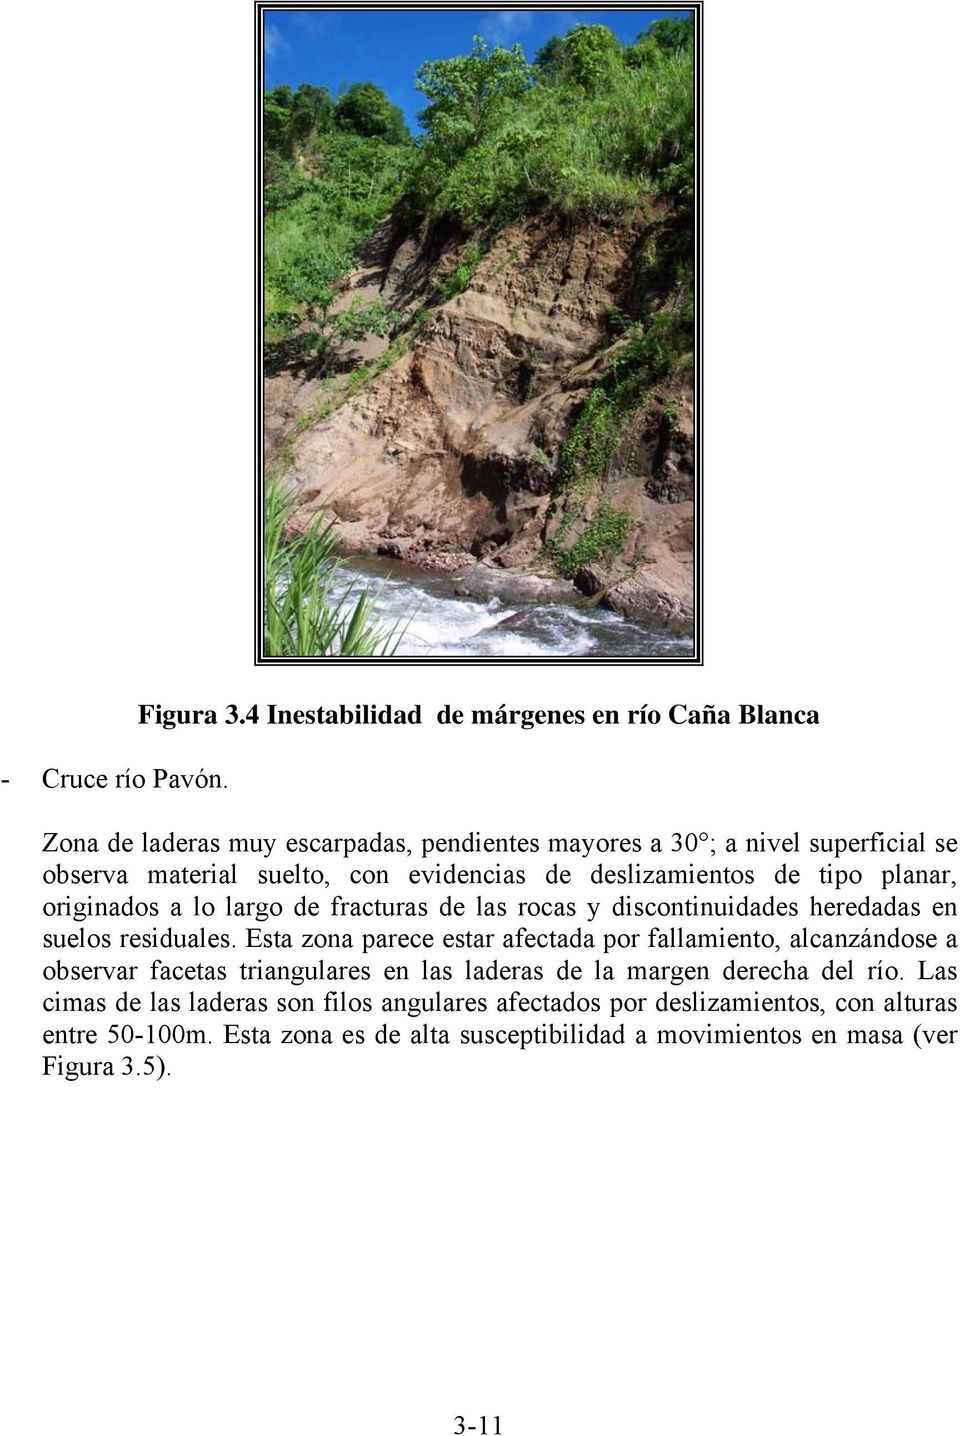 evidencias de deslizamientos de tipo planar, originados a lo largo de fracturas de las rocas y discontinuidades heredadas en suelos residuales.